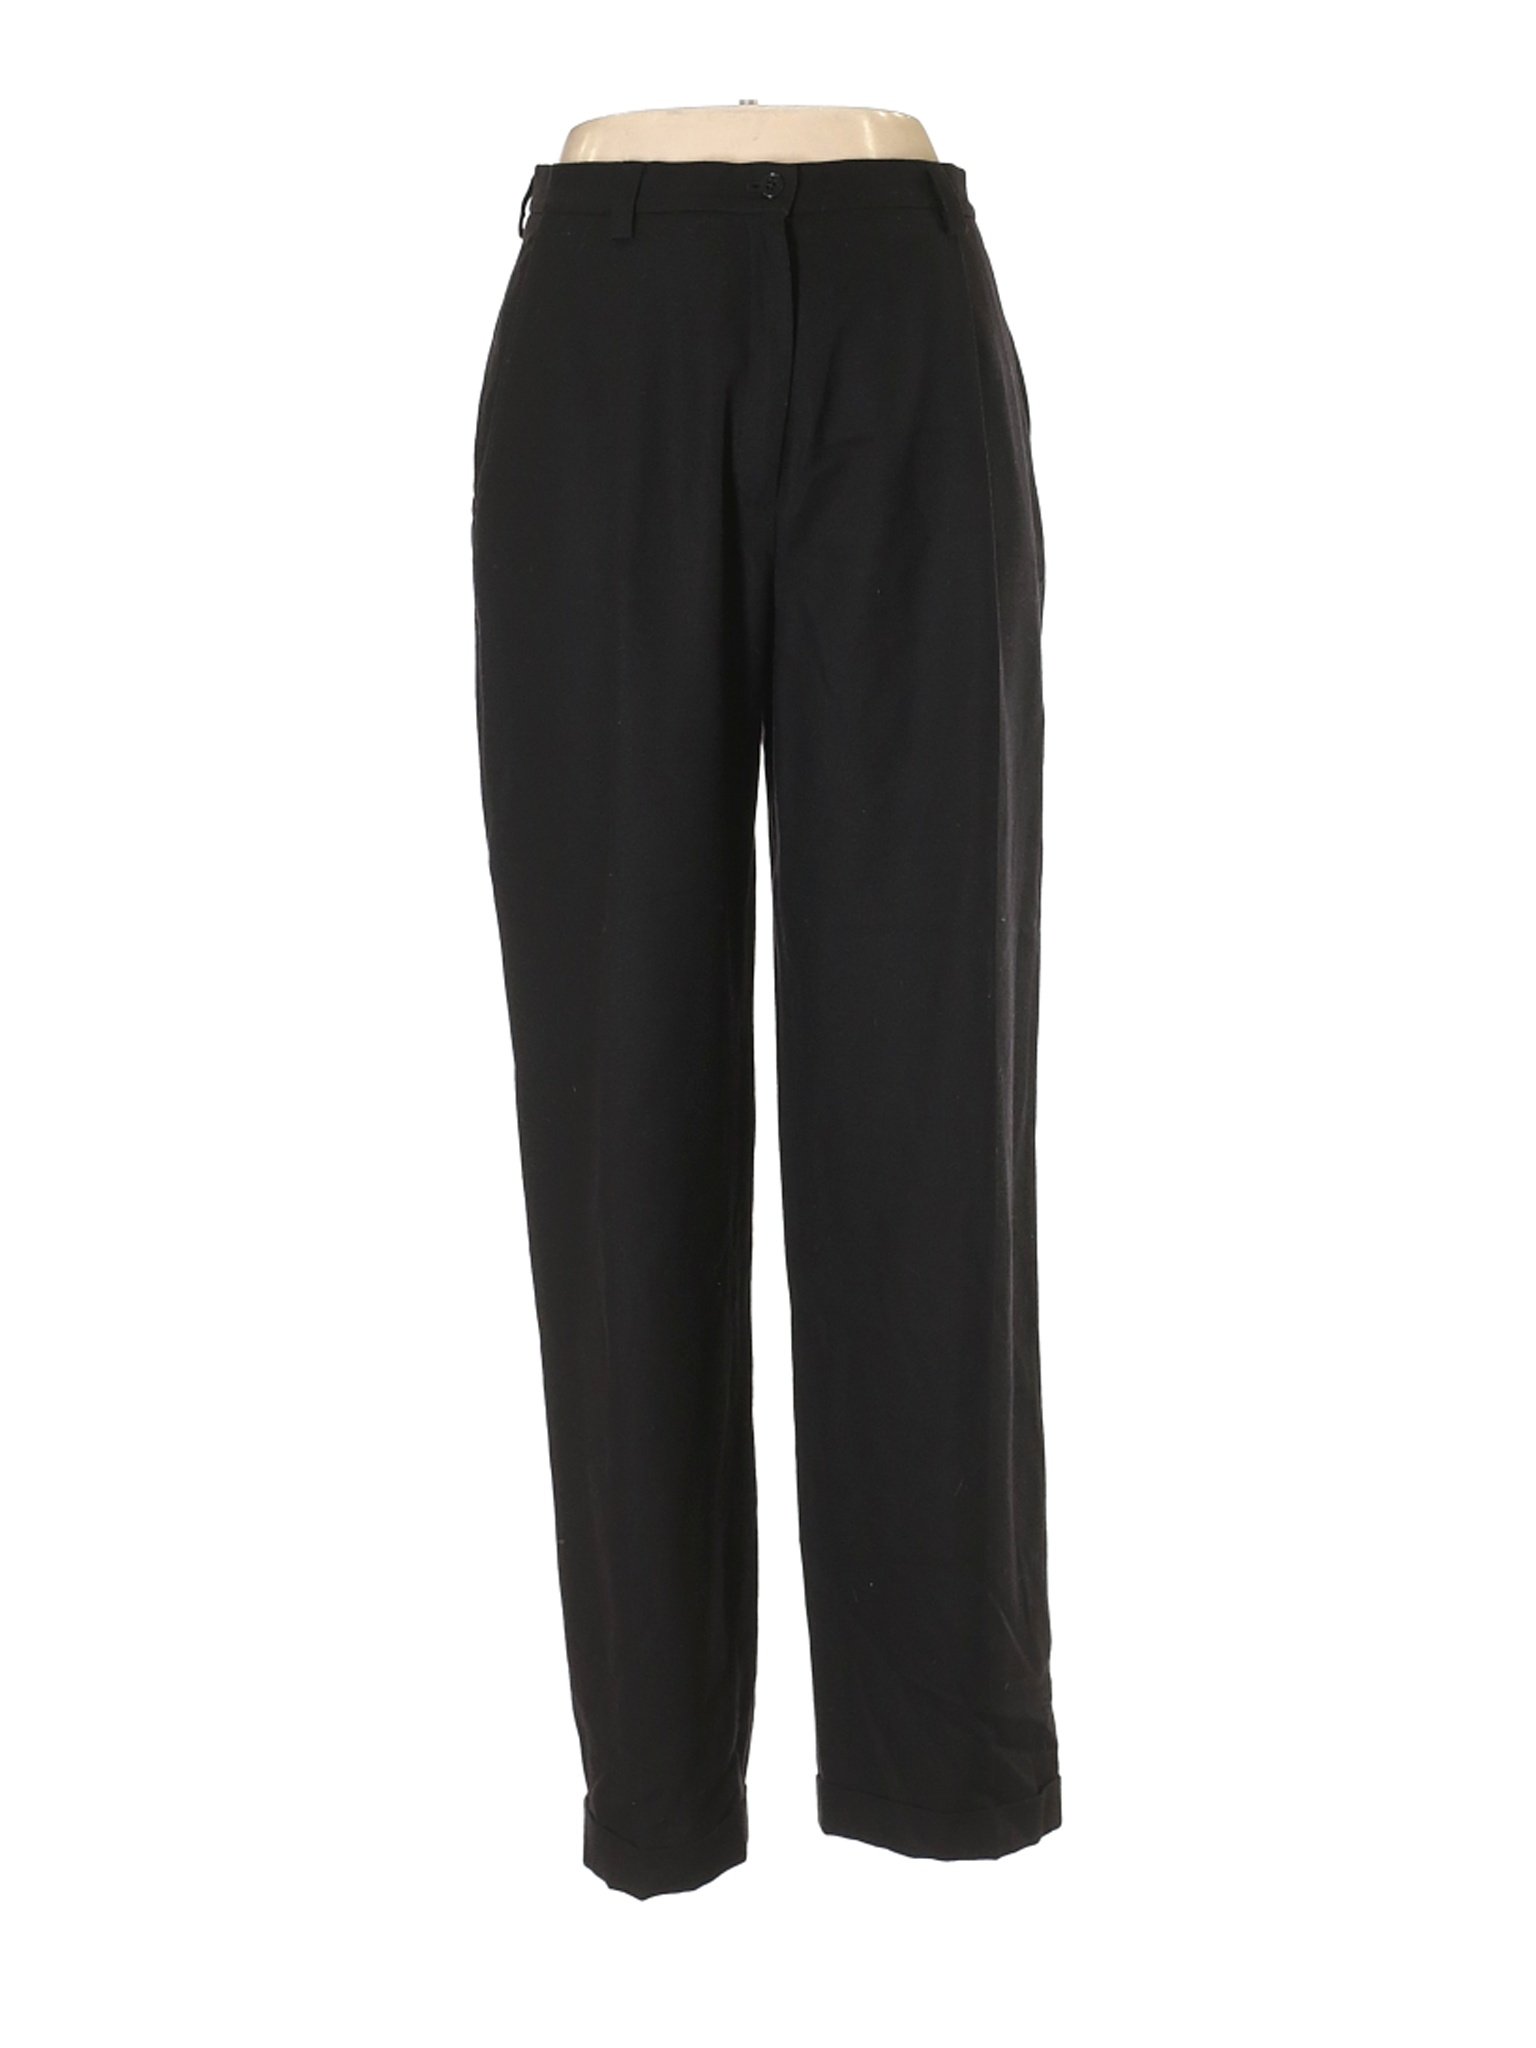 Lauren by Ralph Lauren Women Black Wool Pants 10 | eBay